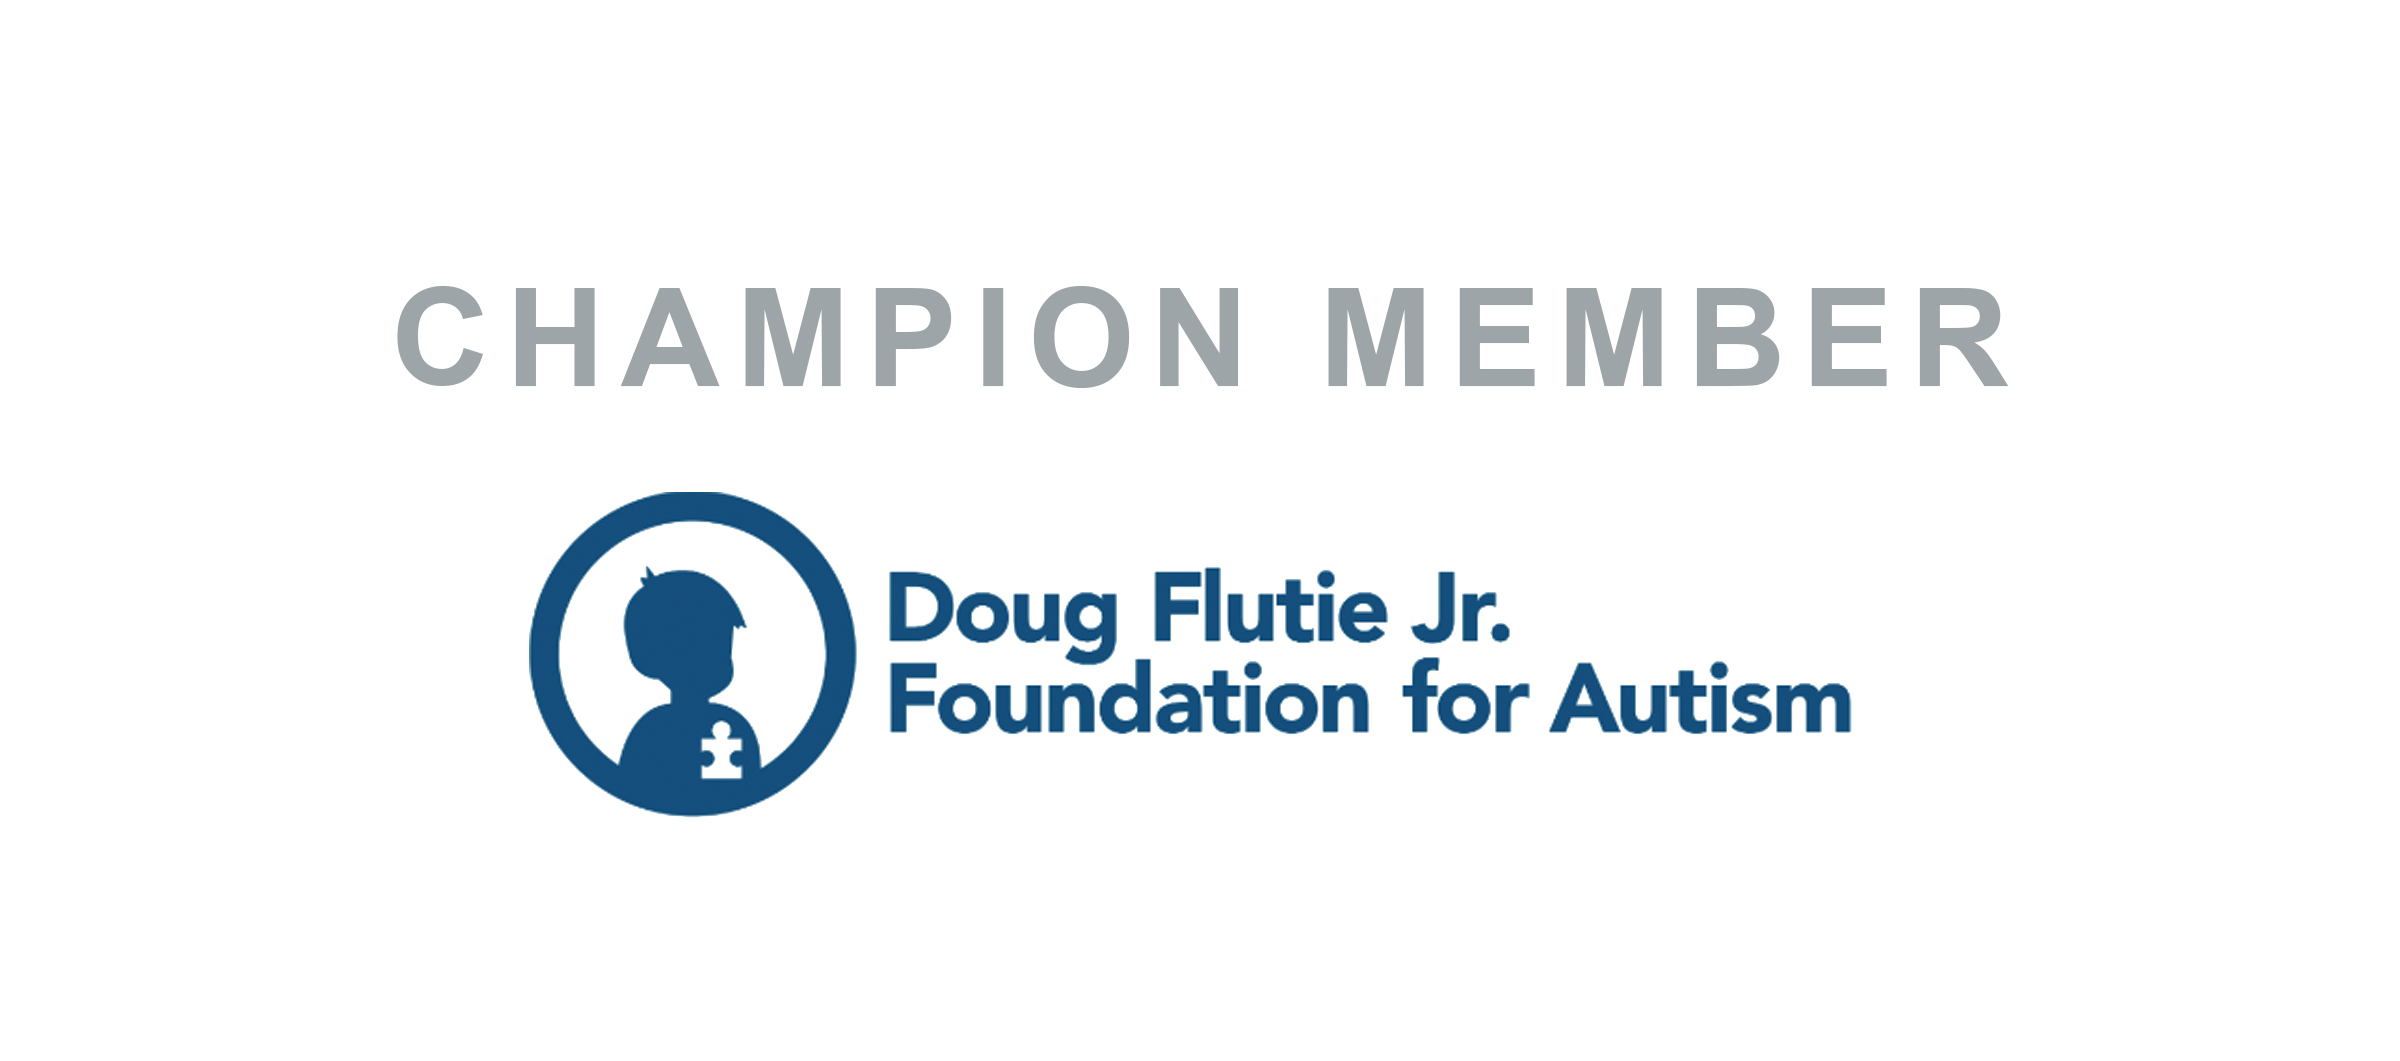  Doug Flutie Jr. Foundation for Autism